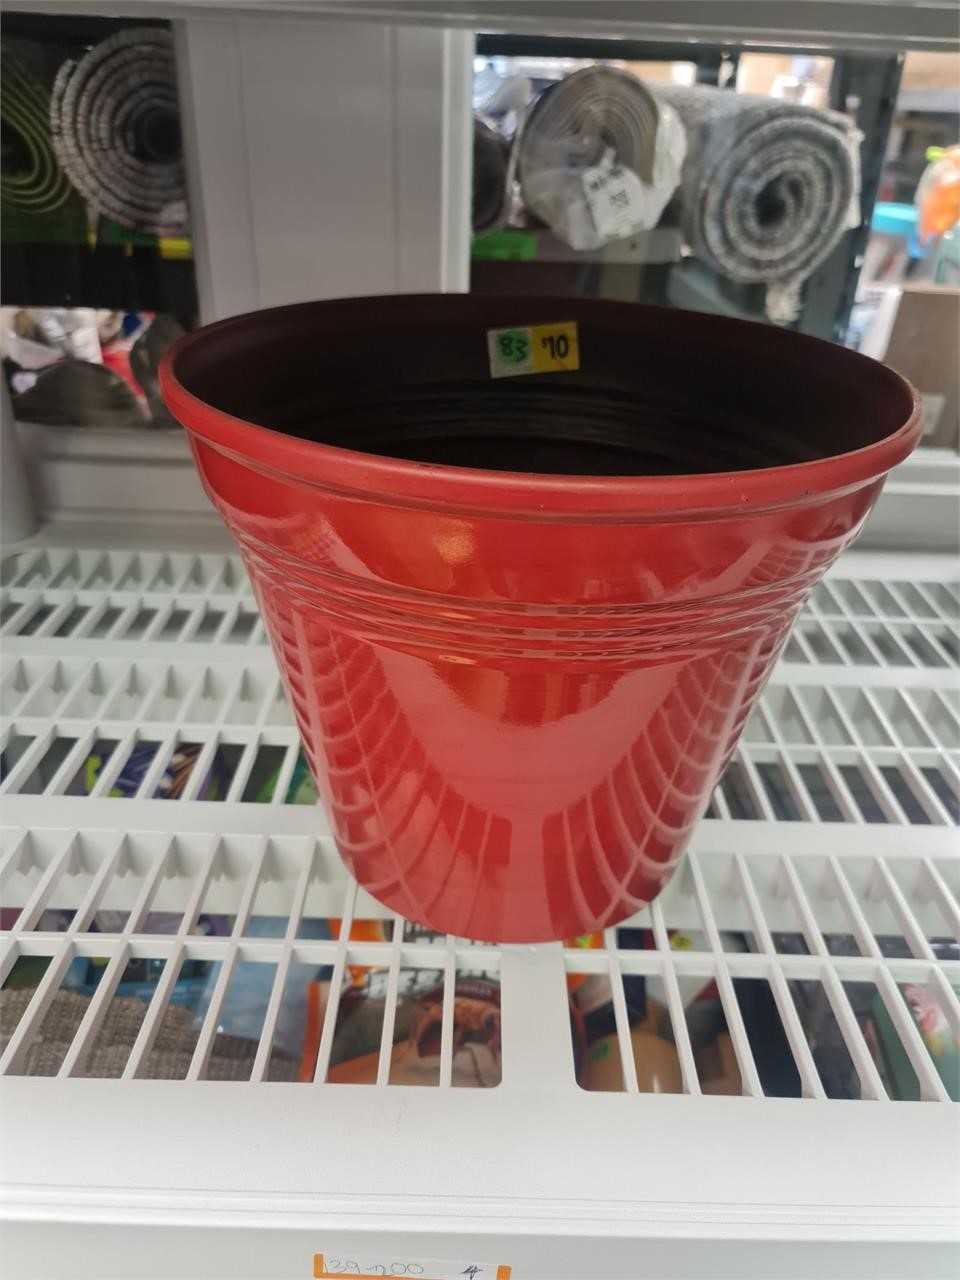 Red flower pot